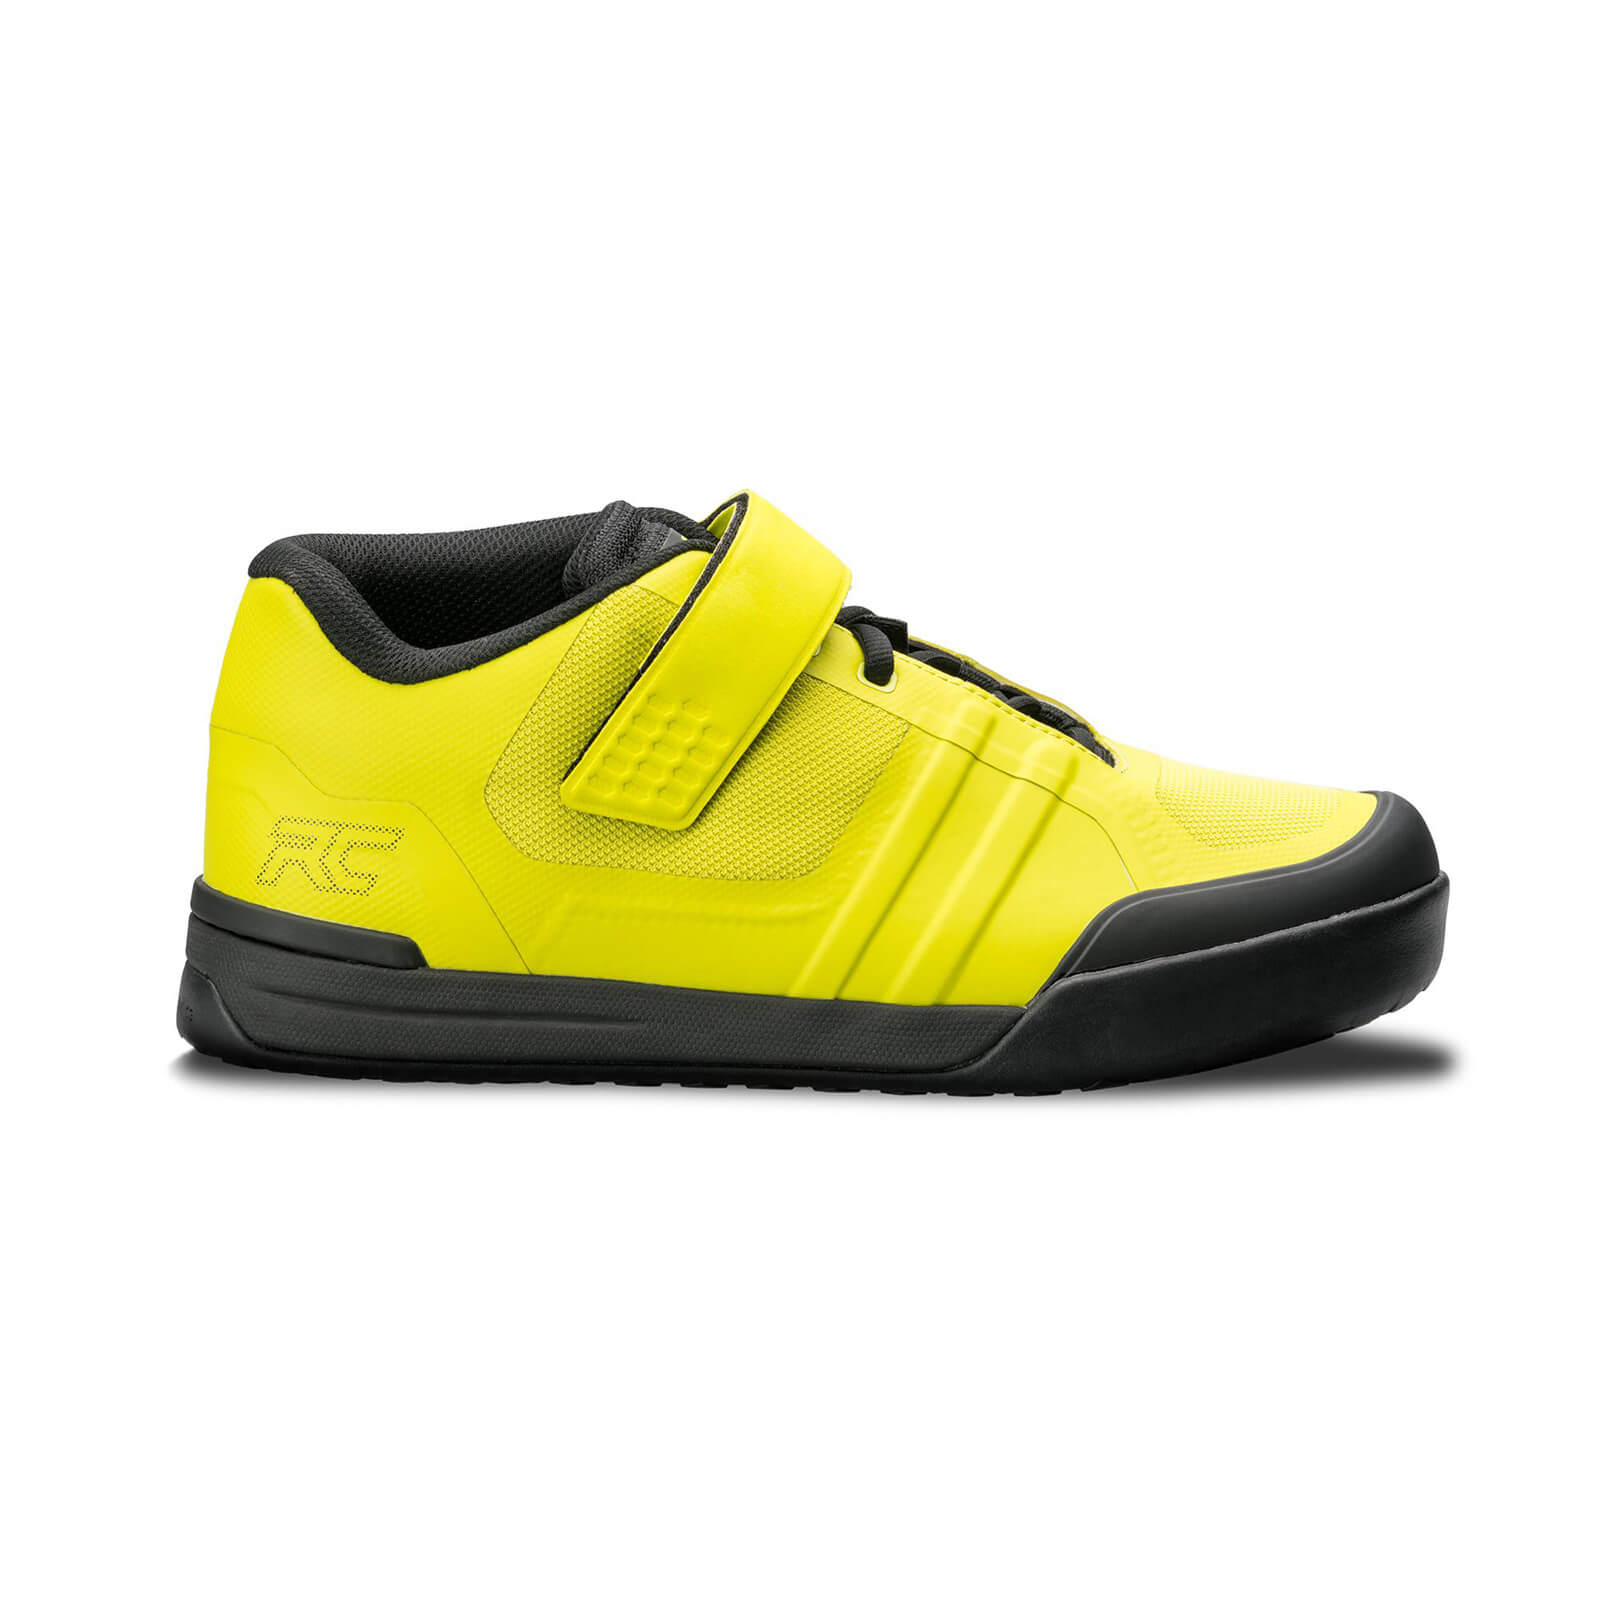 Ride Concepts Transition SPD MTB Shoes - UK 6/EU 40 - Lime/Black